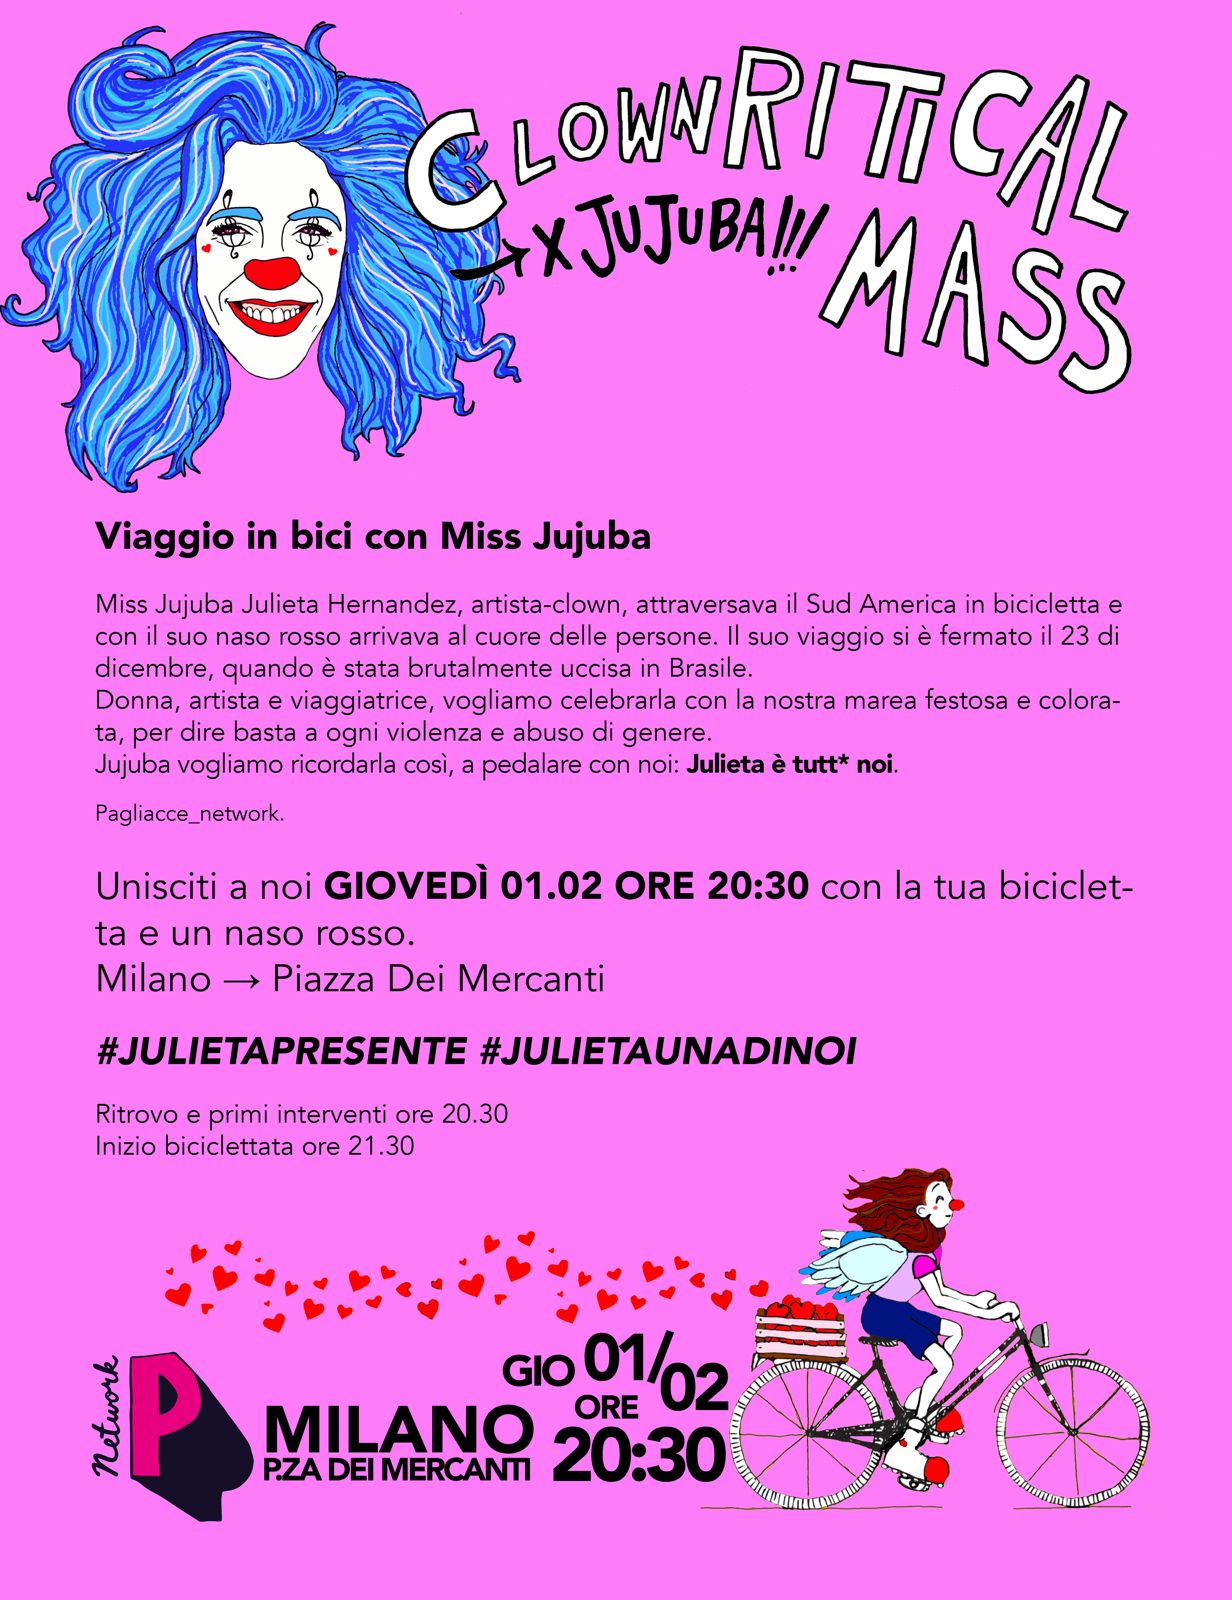 Viaggio in bici con Miss Jujuba - Clownritical Mass